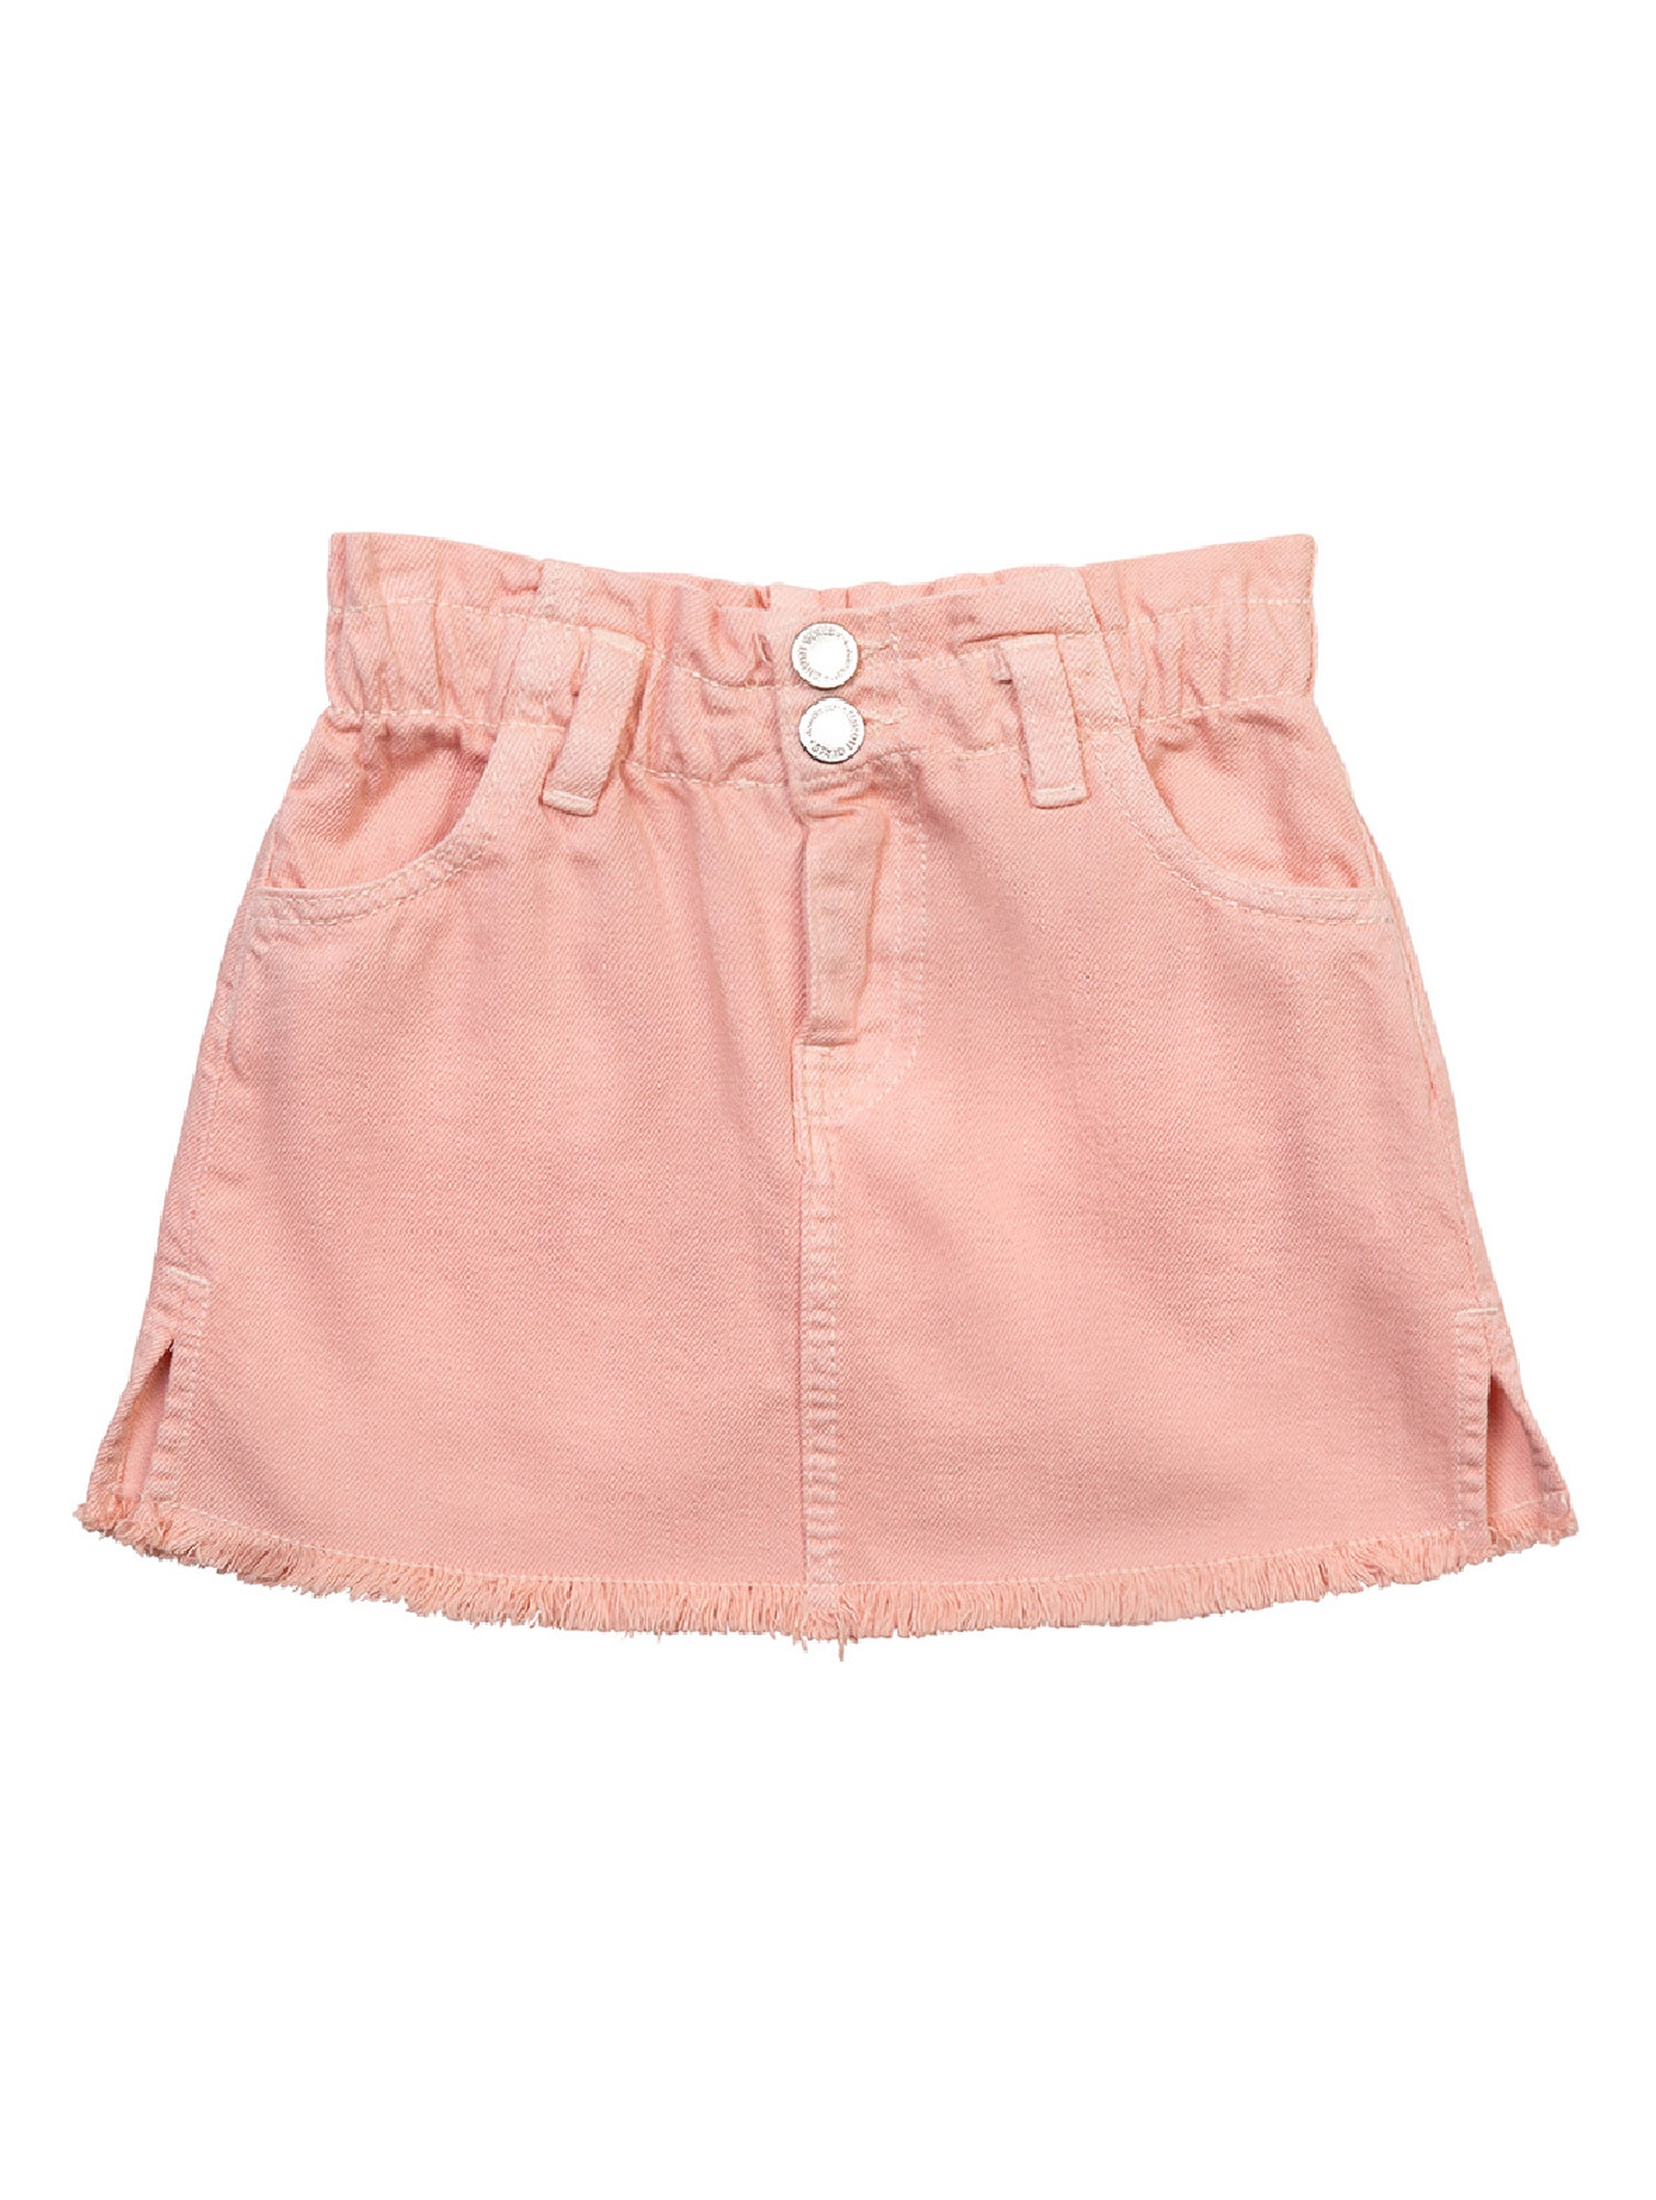 Różowa spódniczka jeansowa dla niemowlaka